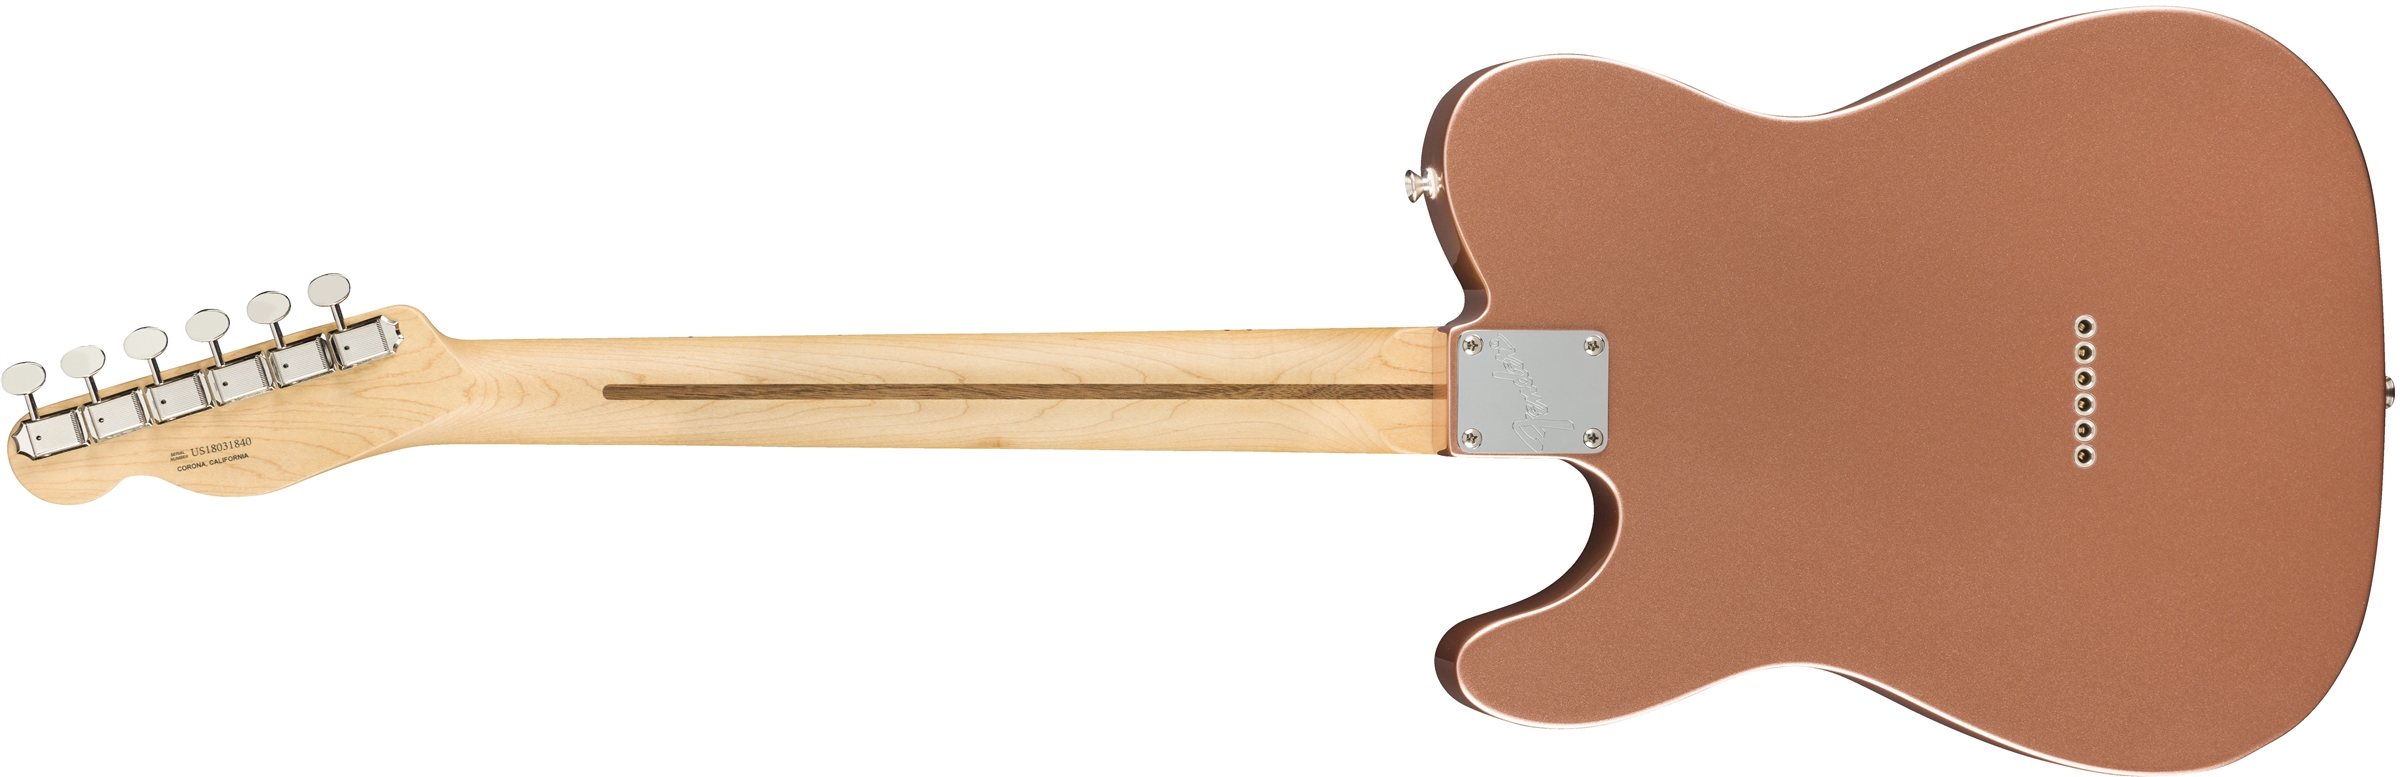 Fender Tele American Performer Usa Mn - Penny - Guitarra eléctrica con forma de tel - Variation 1